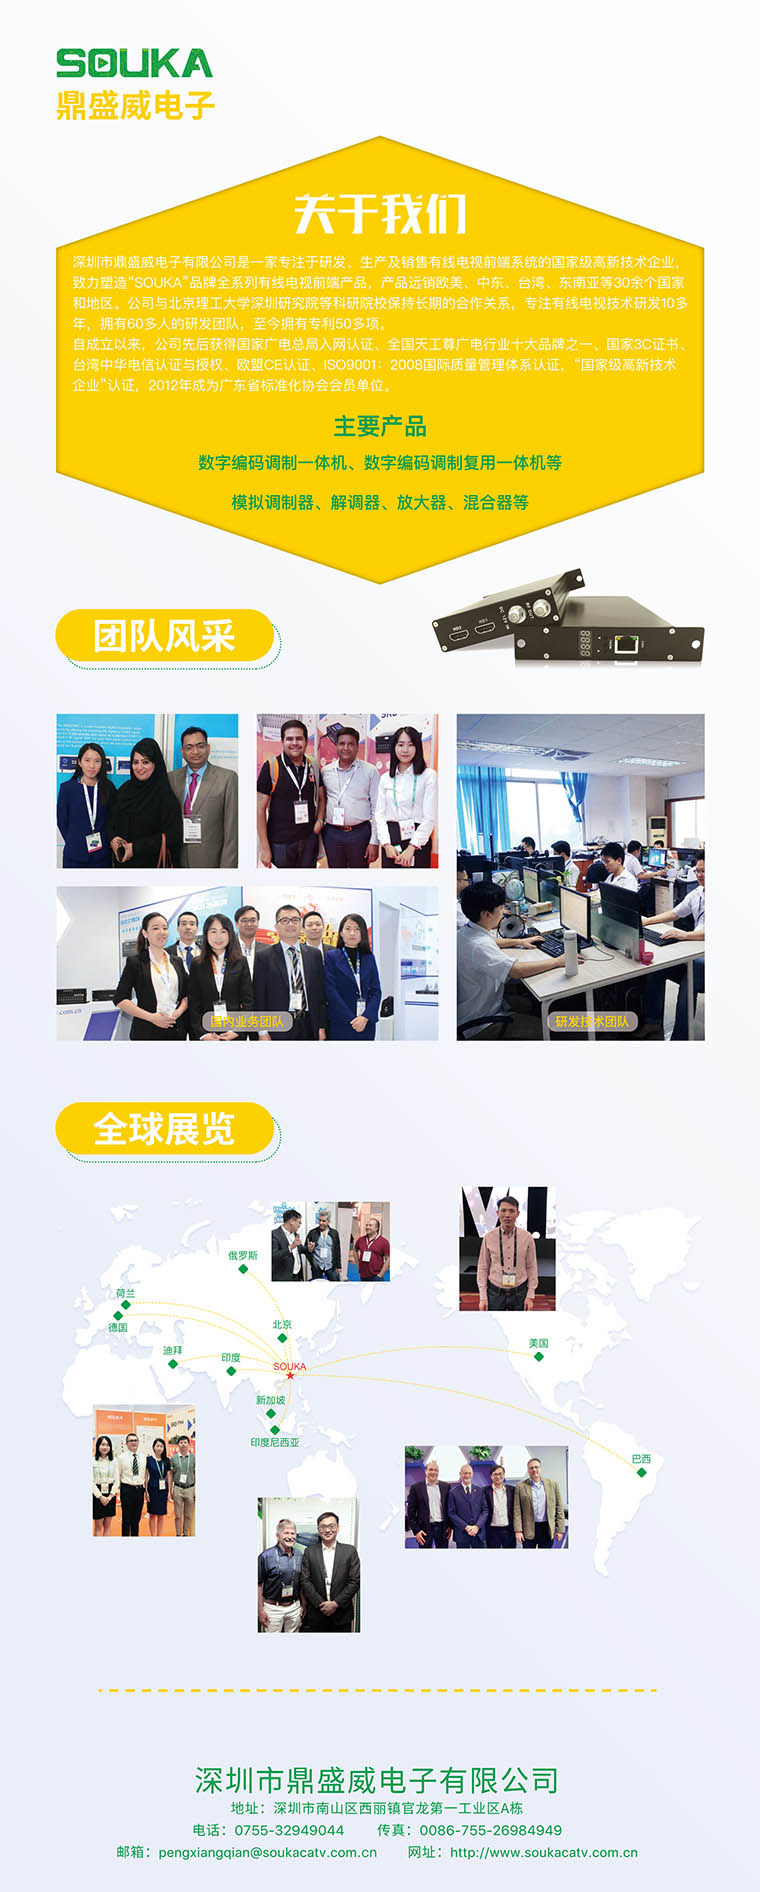  调制器厂家将参加第十六届广州国际酒店用品展